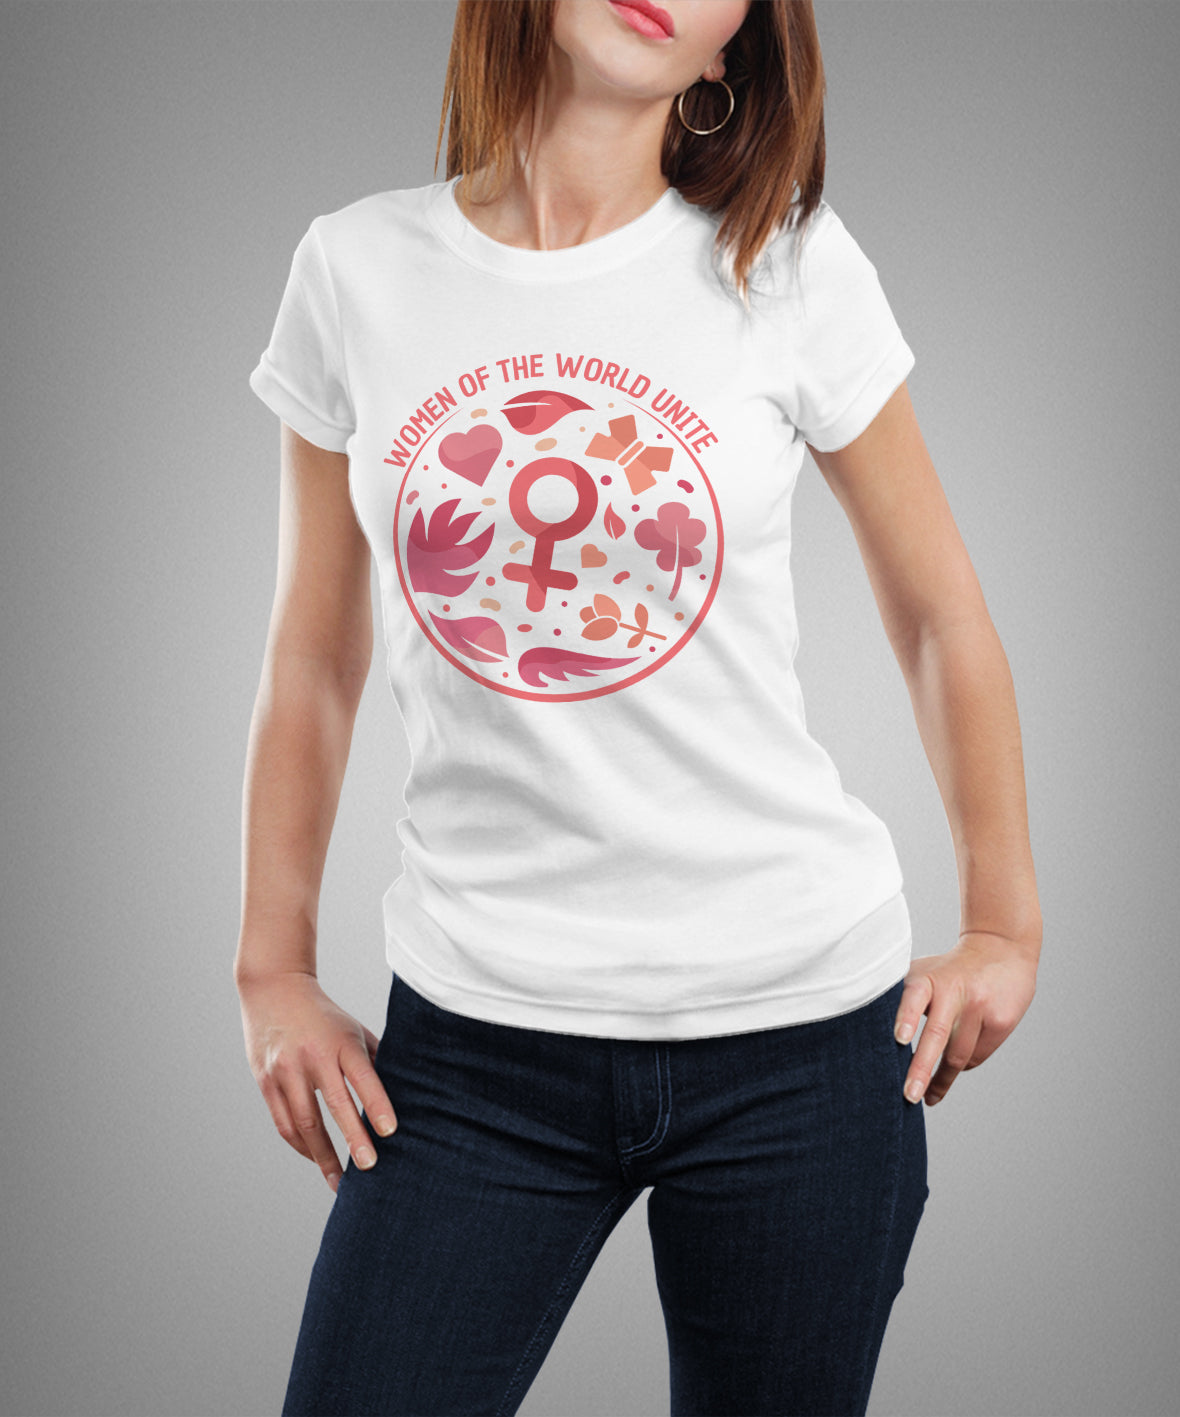 T-shirt "WOMEN OF THE WORLD UNITE"